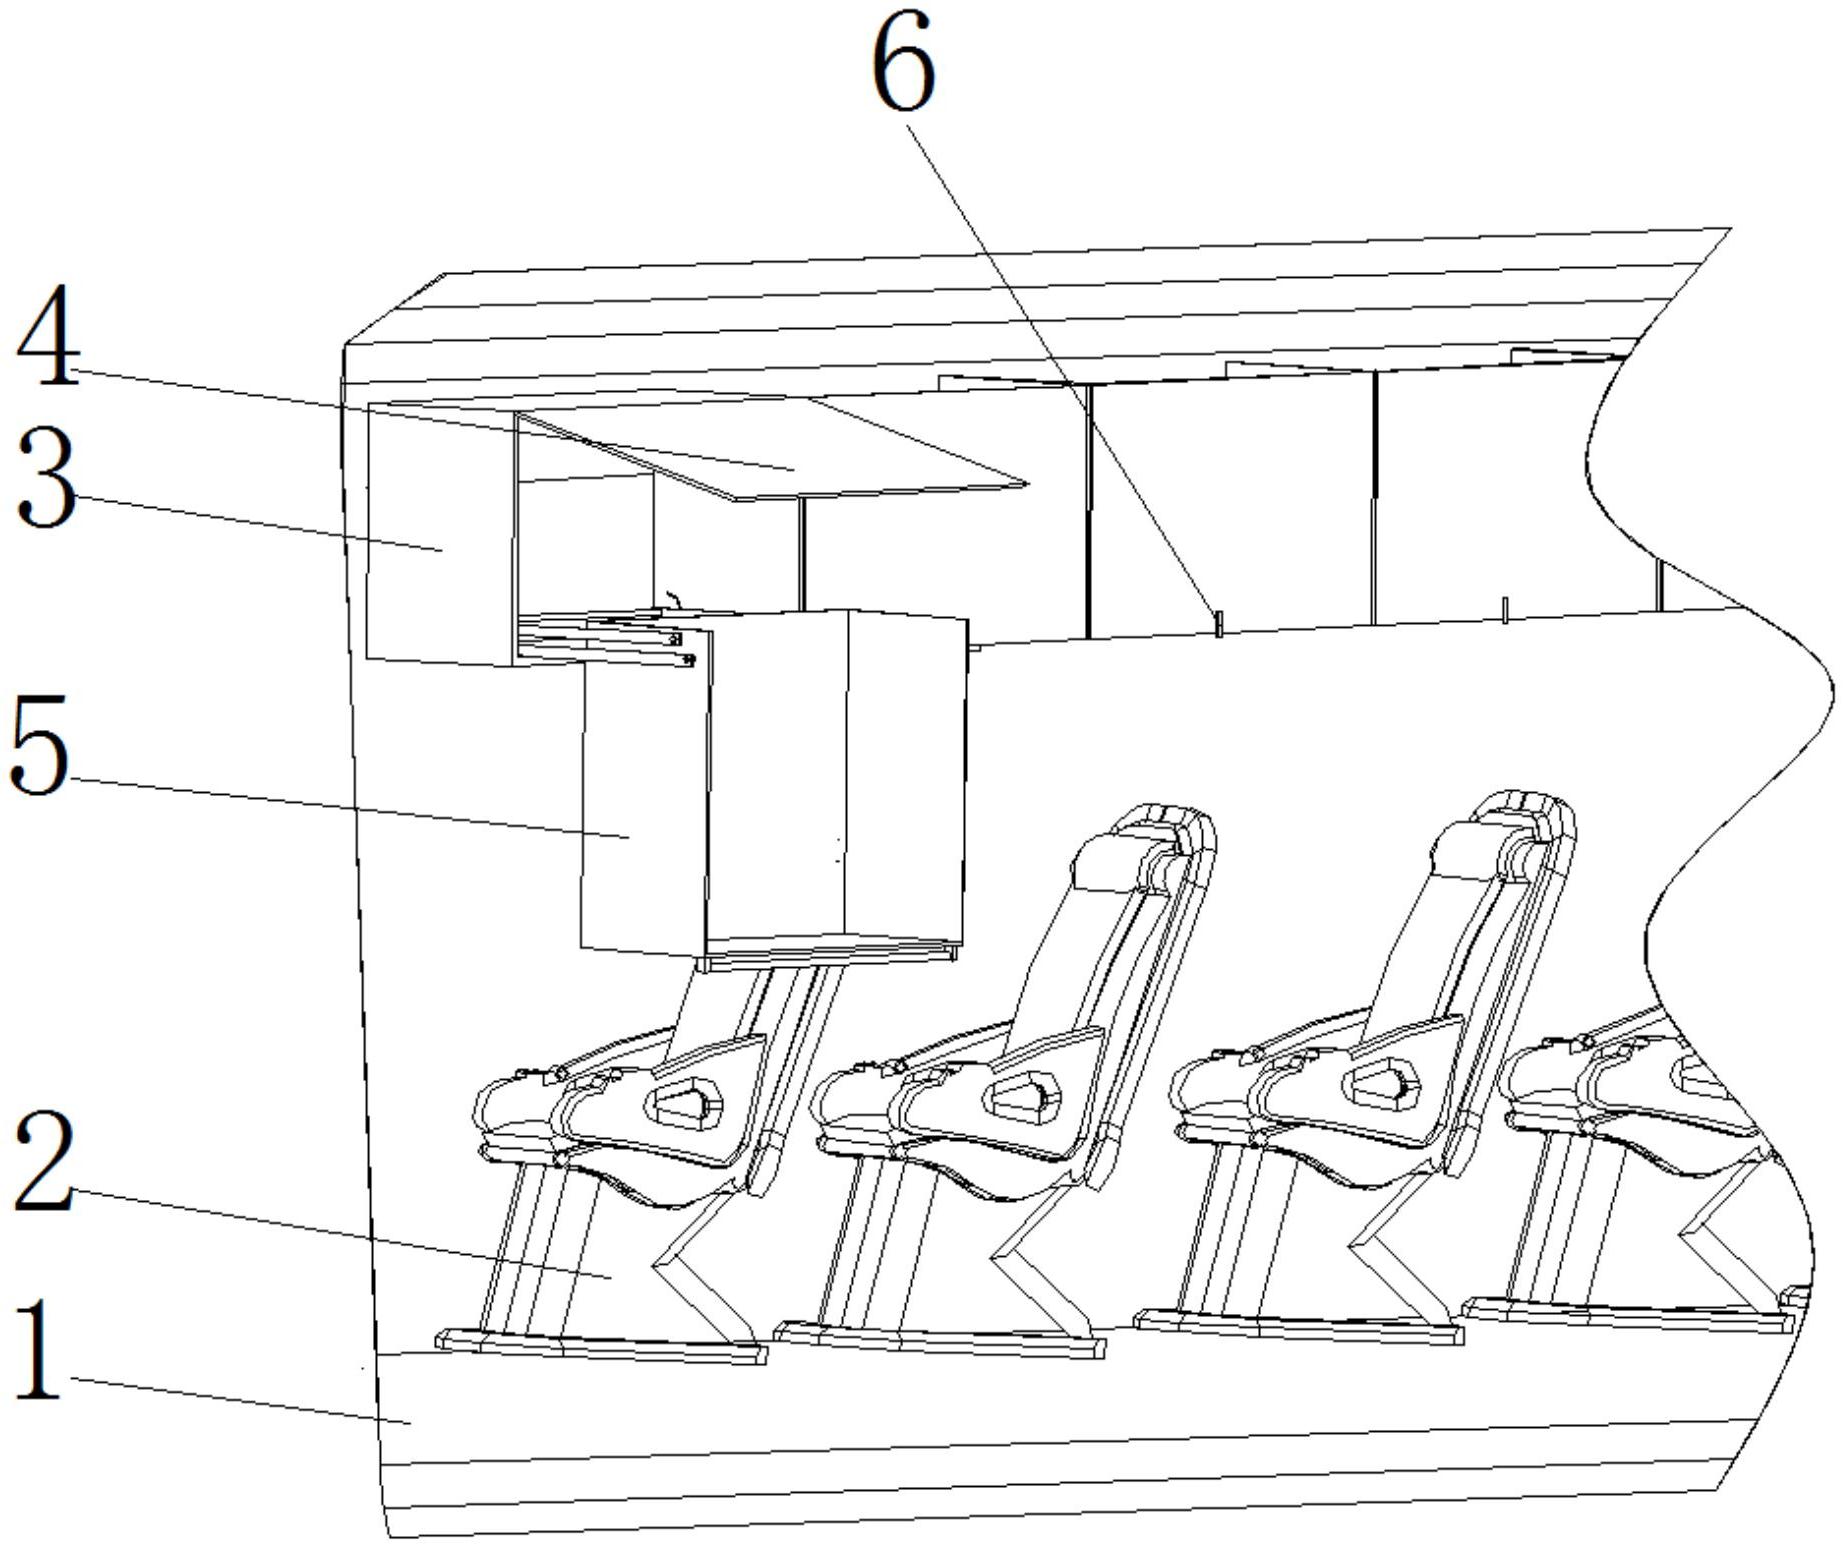 且公开了一种高铁行李架,包括车厢,车厢内腔的底部固定安装有座椅